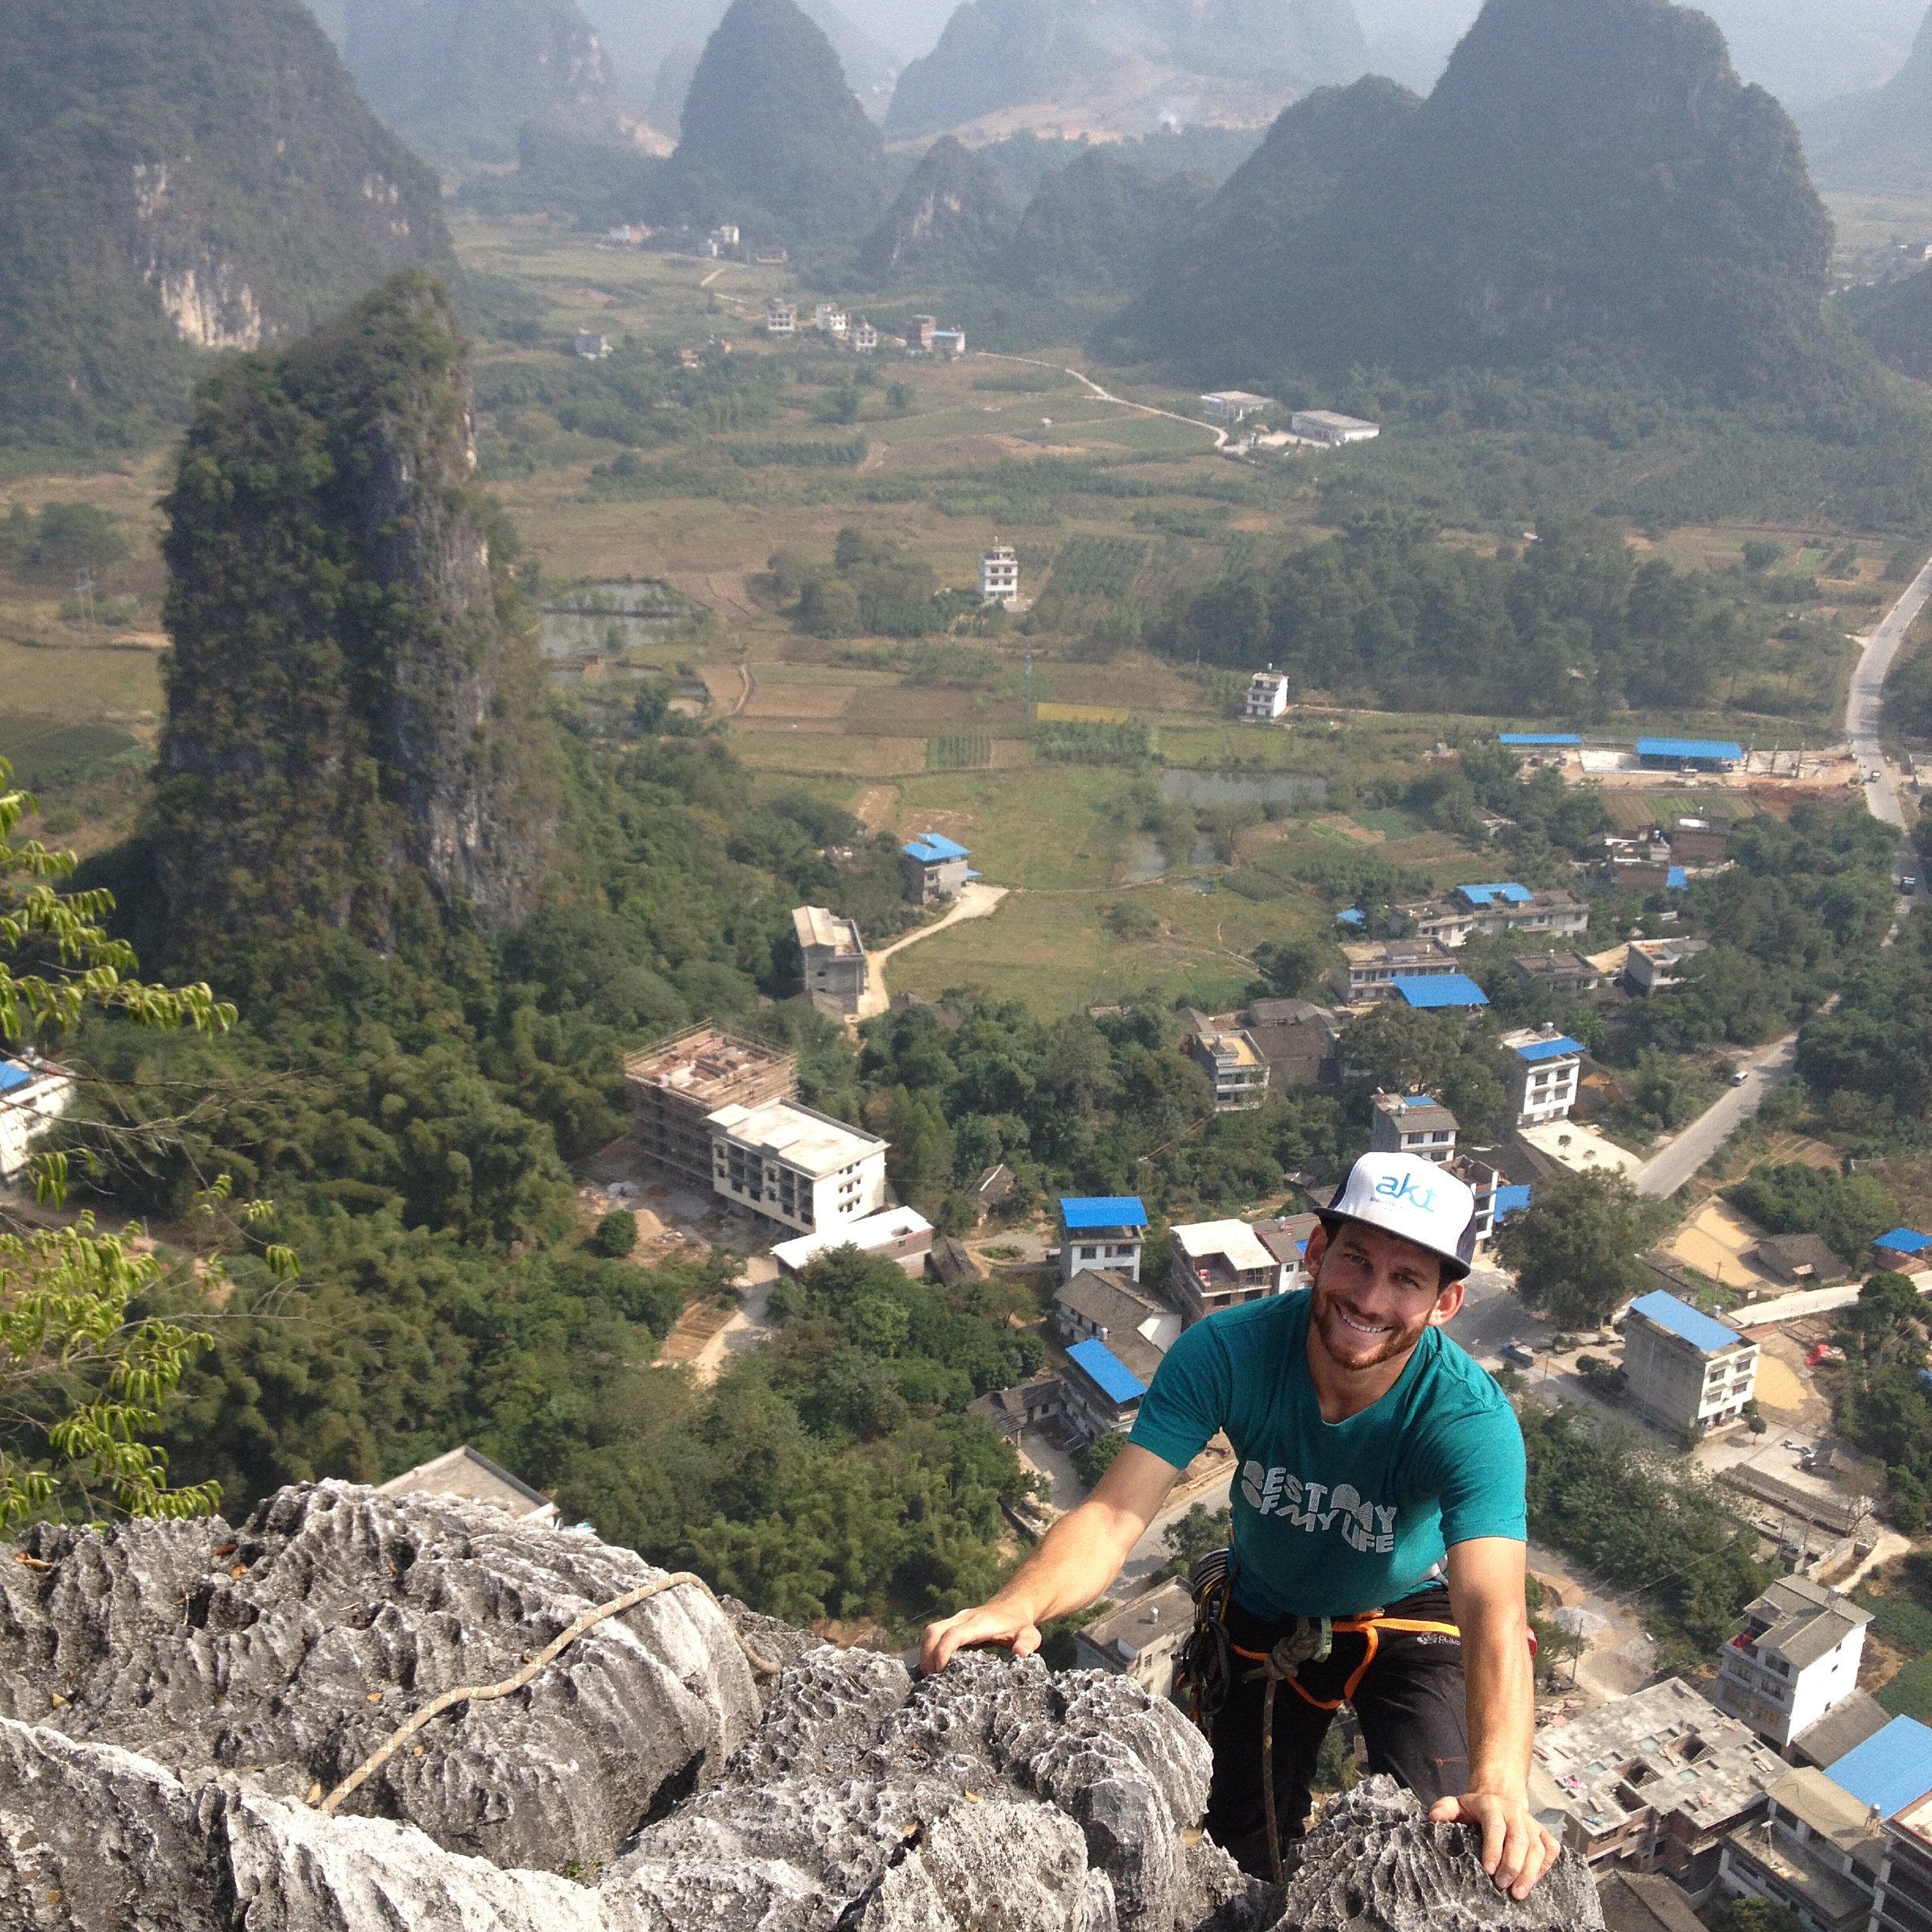 Gary climbing in Yangshuo China